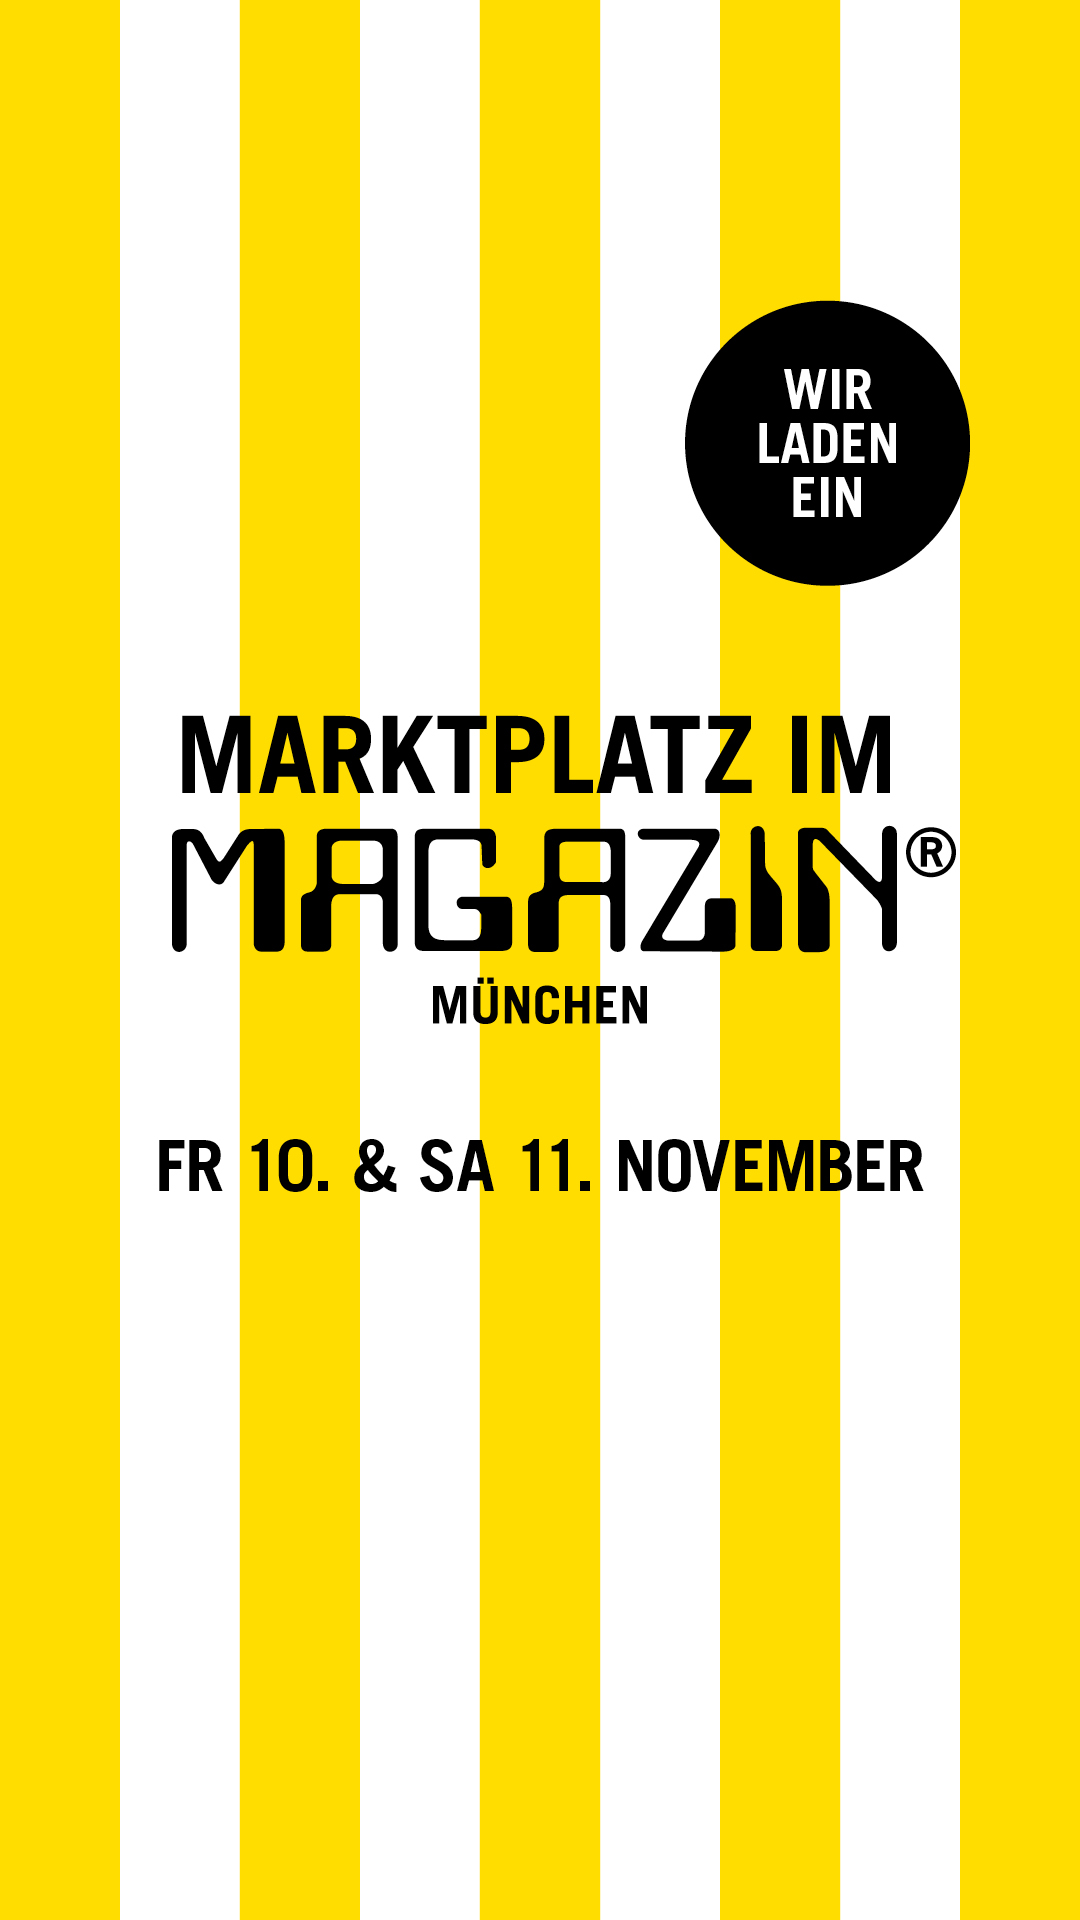 Marktplatz Magazin Event